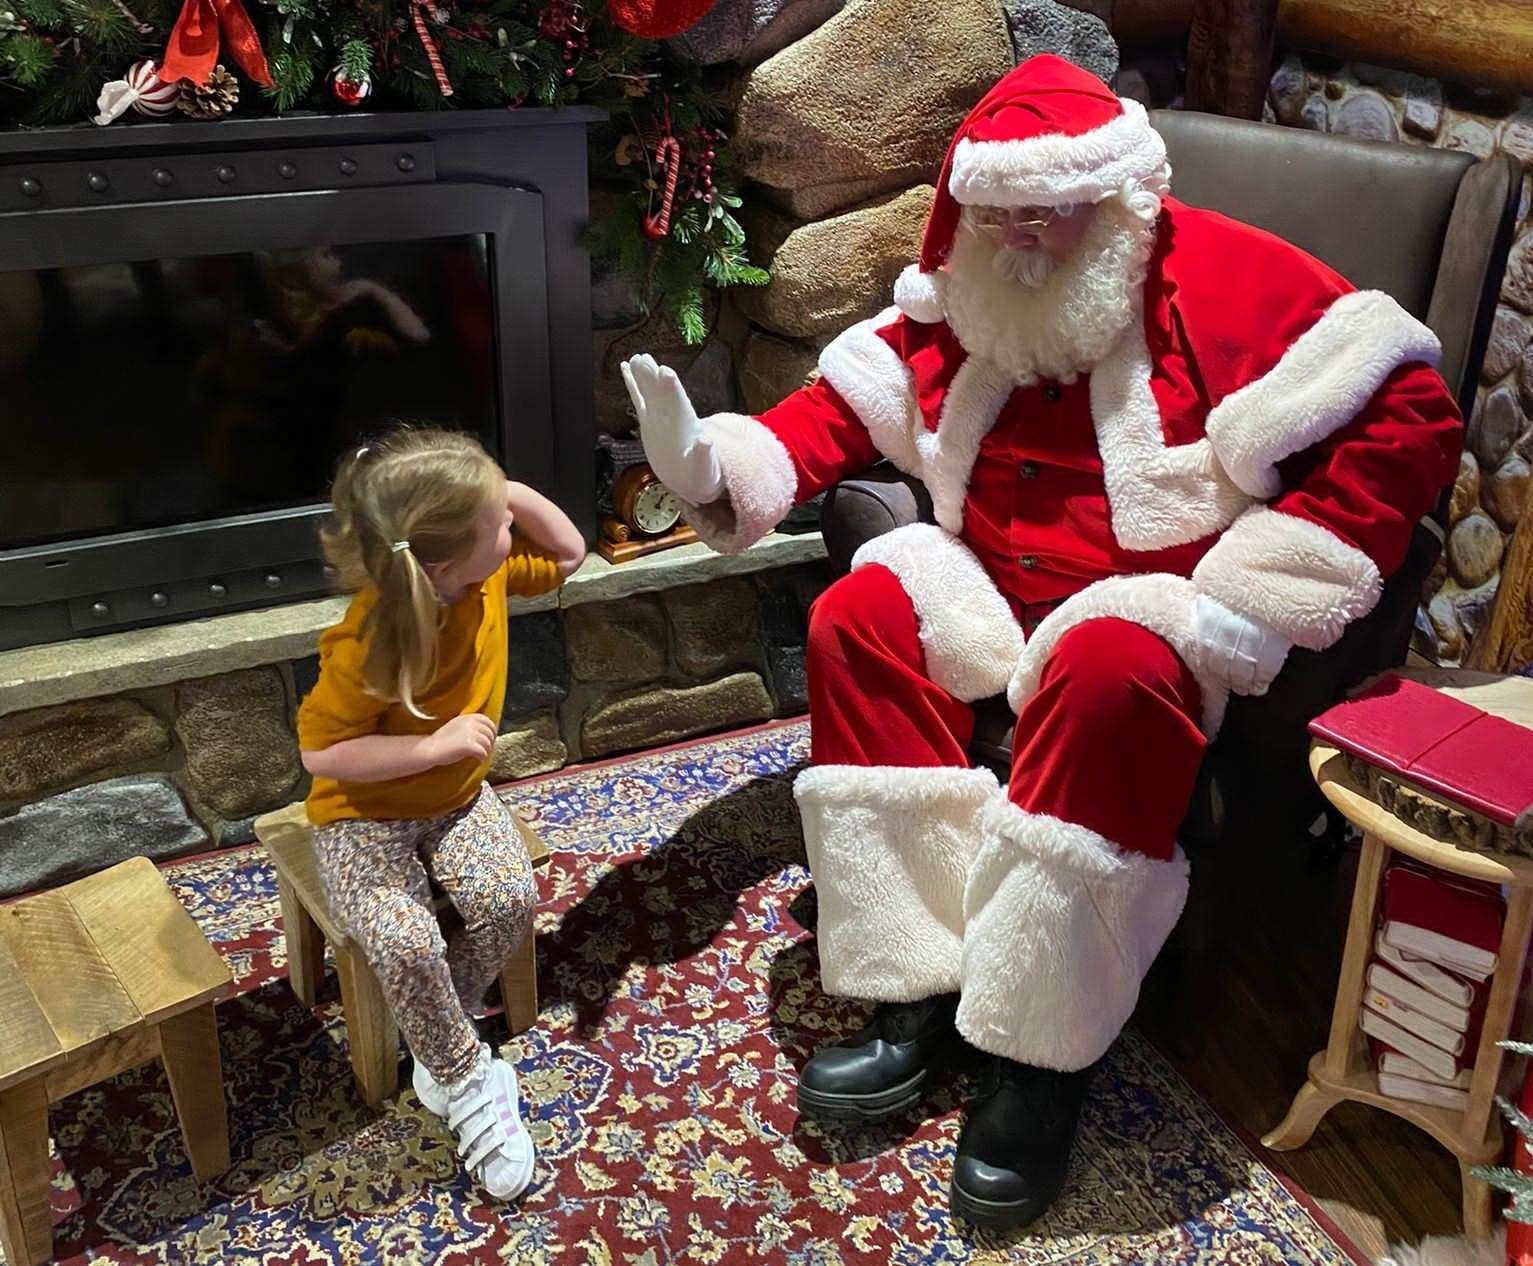 Giving Santa a high five at Hamleys